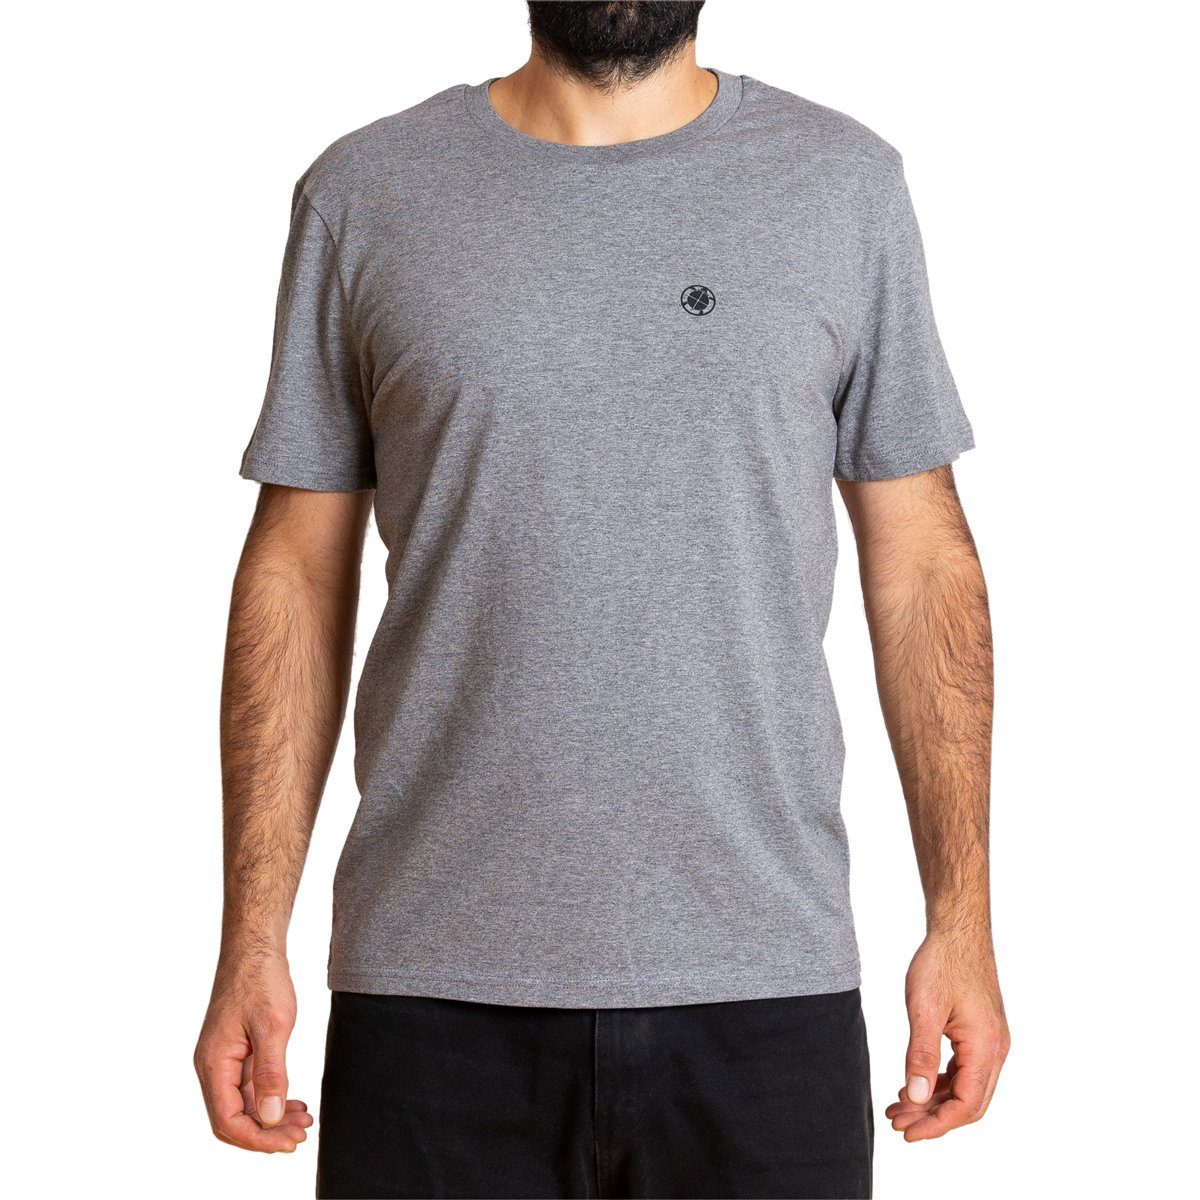 PANASIAM T-Shirt Herren Baumwolle fair aus T-Shirt Bio grau gehandelter "Basic"